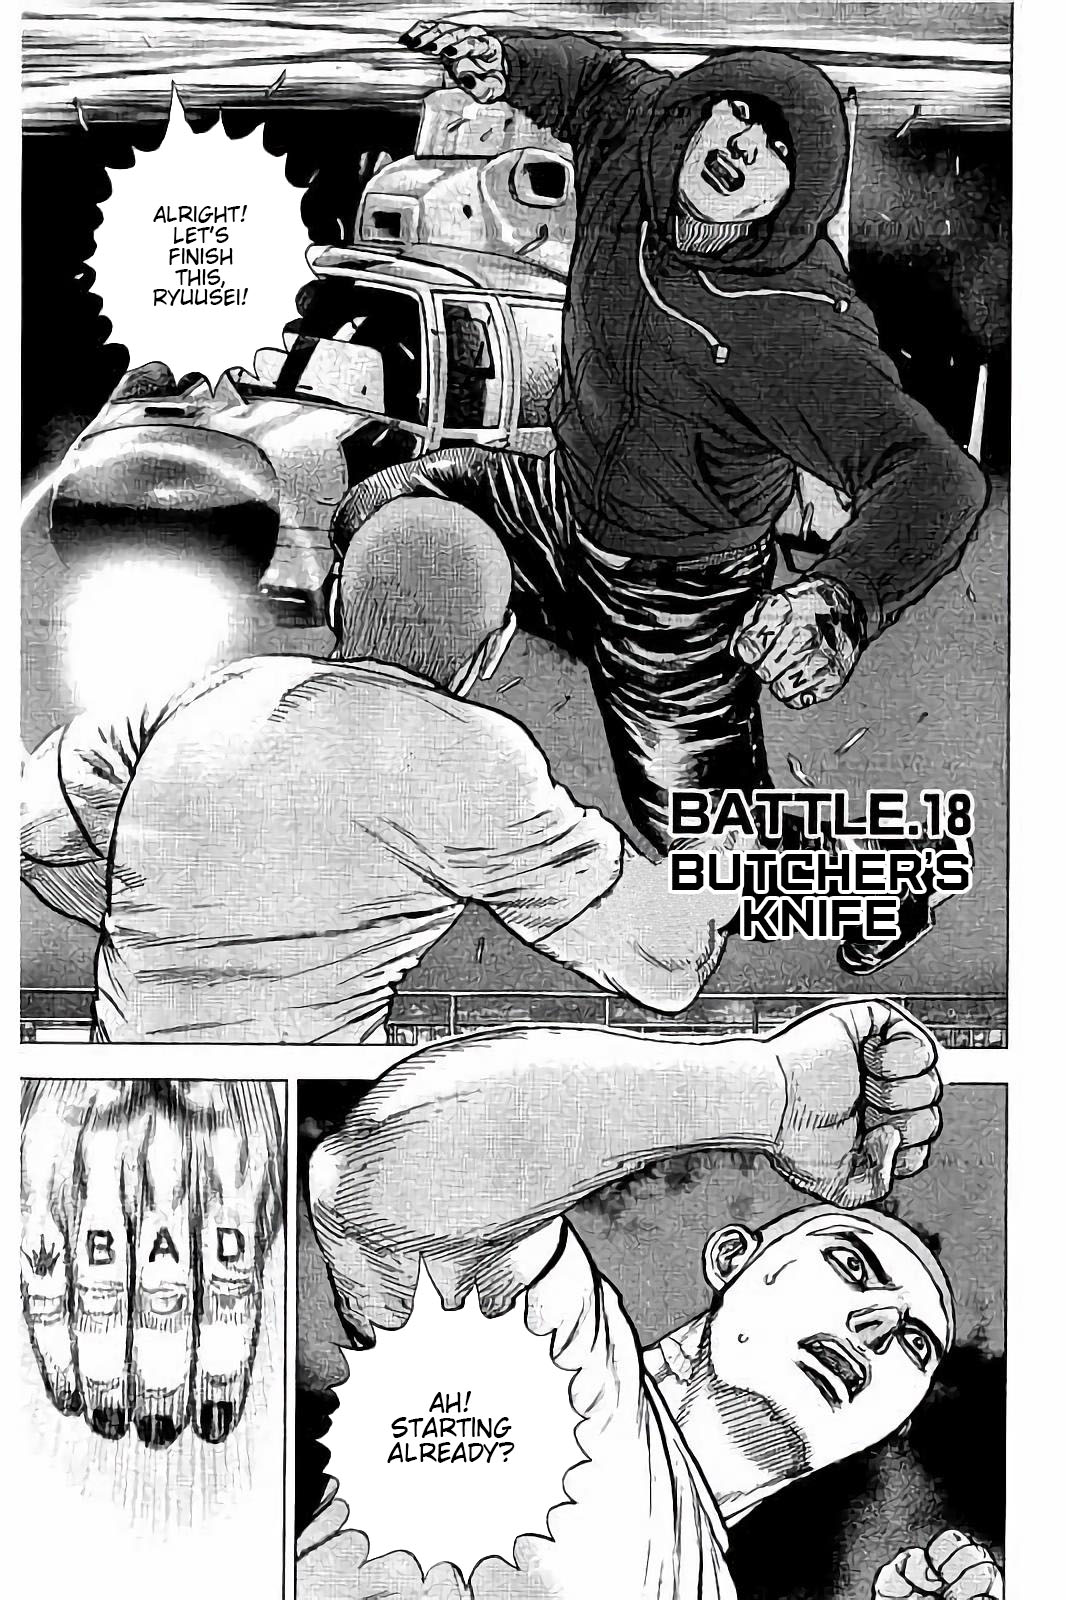 Tough Gaiden - Ryuu Wo Tsugu Otoko Vol.2 Chapter 18: Butcher's Knife - Picture 1